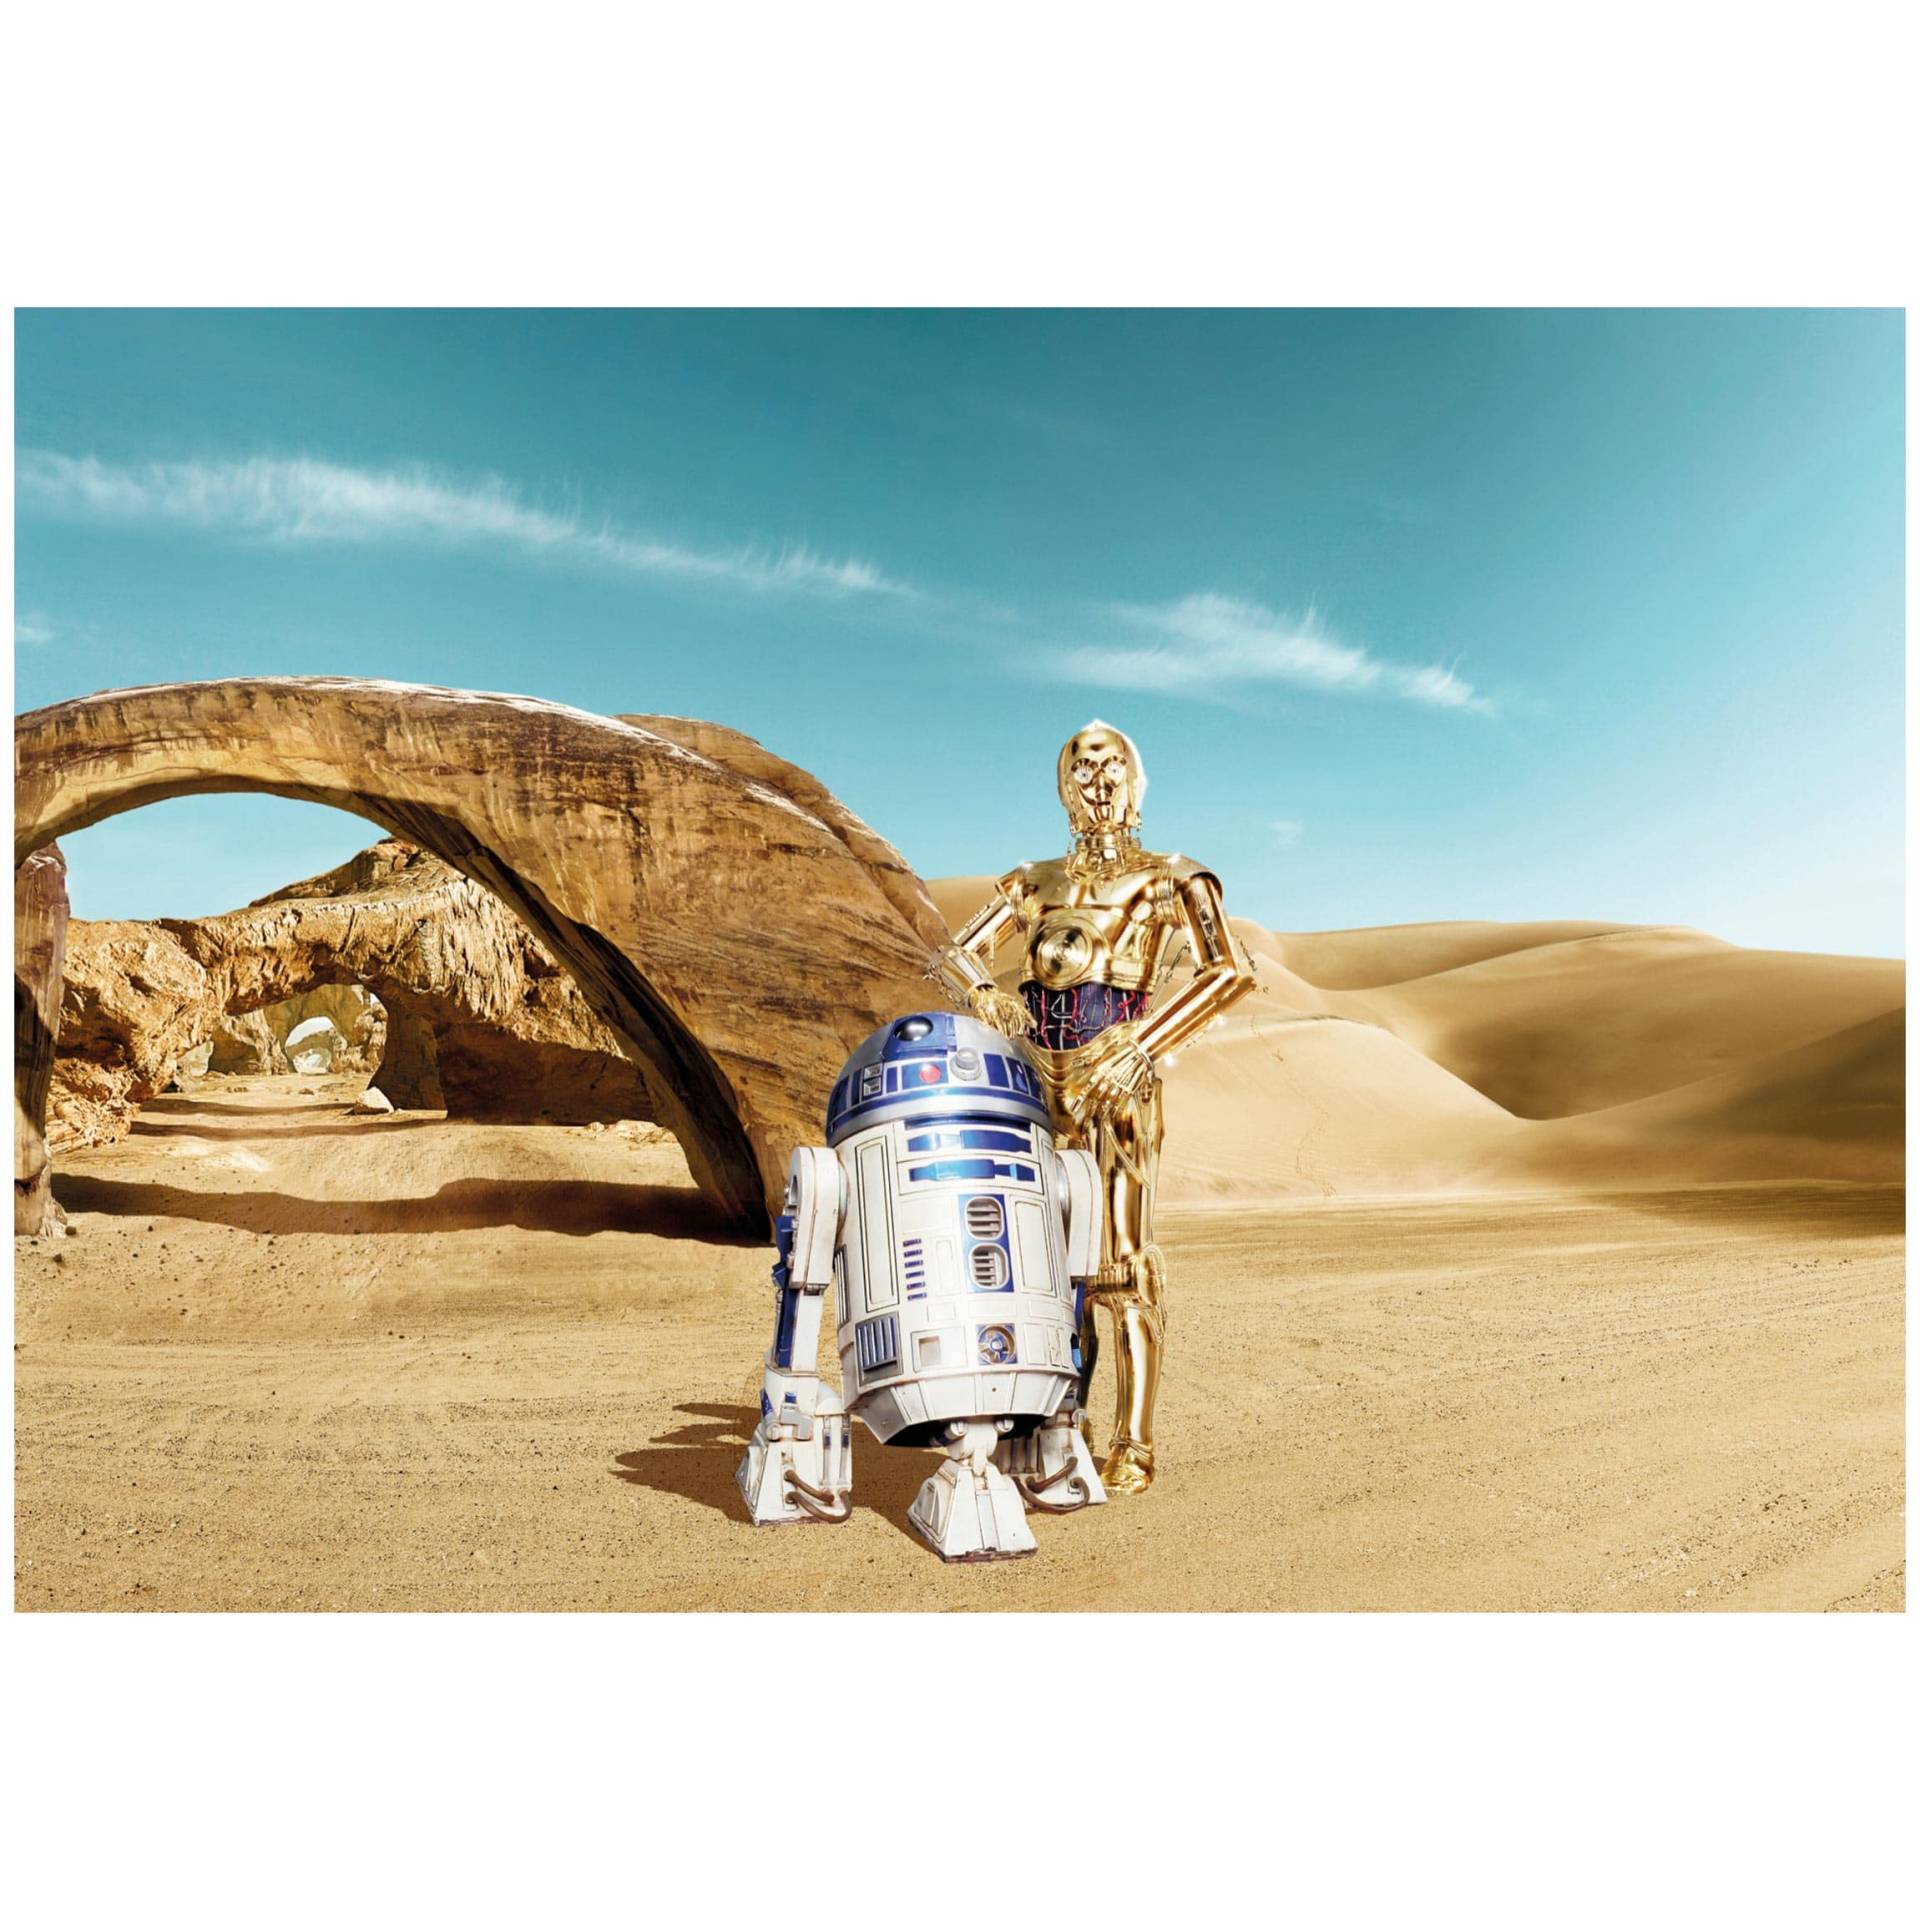 Fototapete Star Wars - C-3PO & R2-D2 Tatooine von Klebefieber